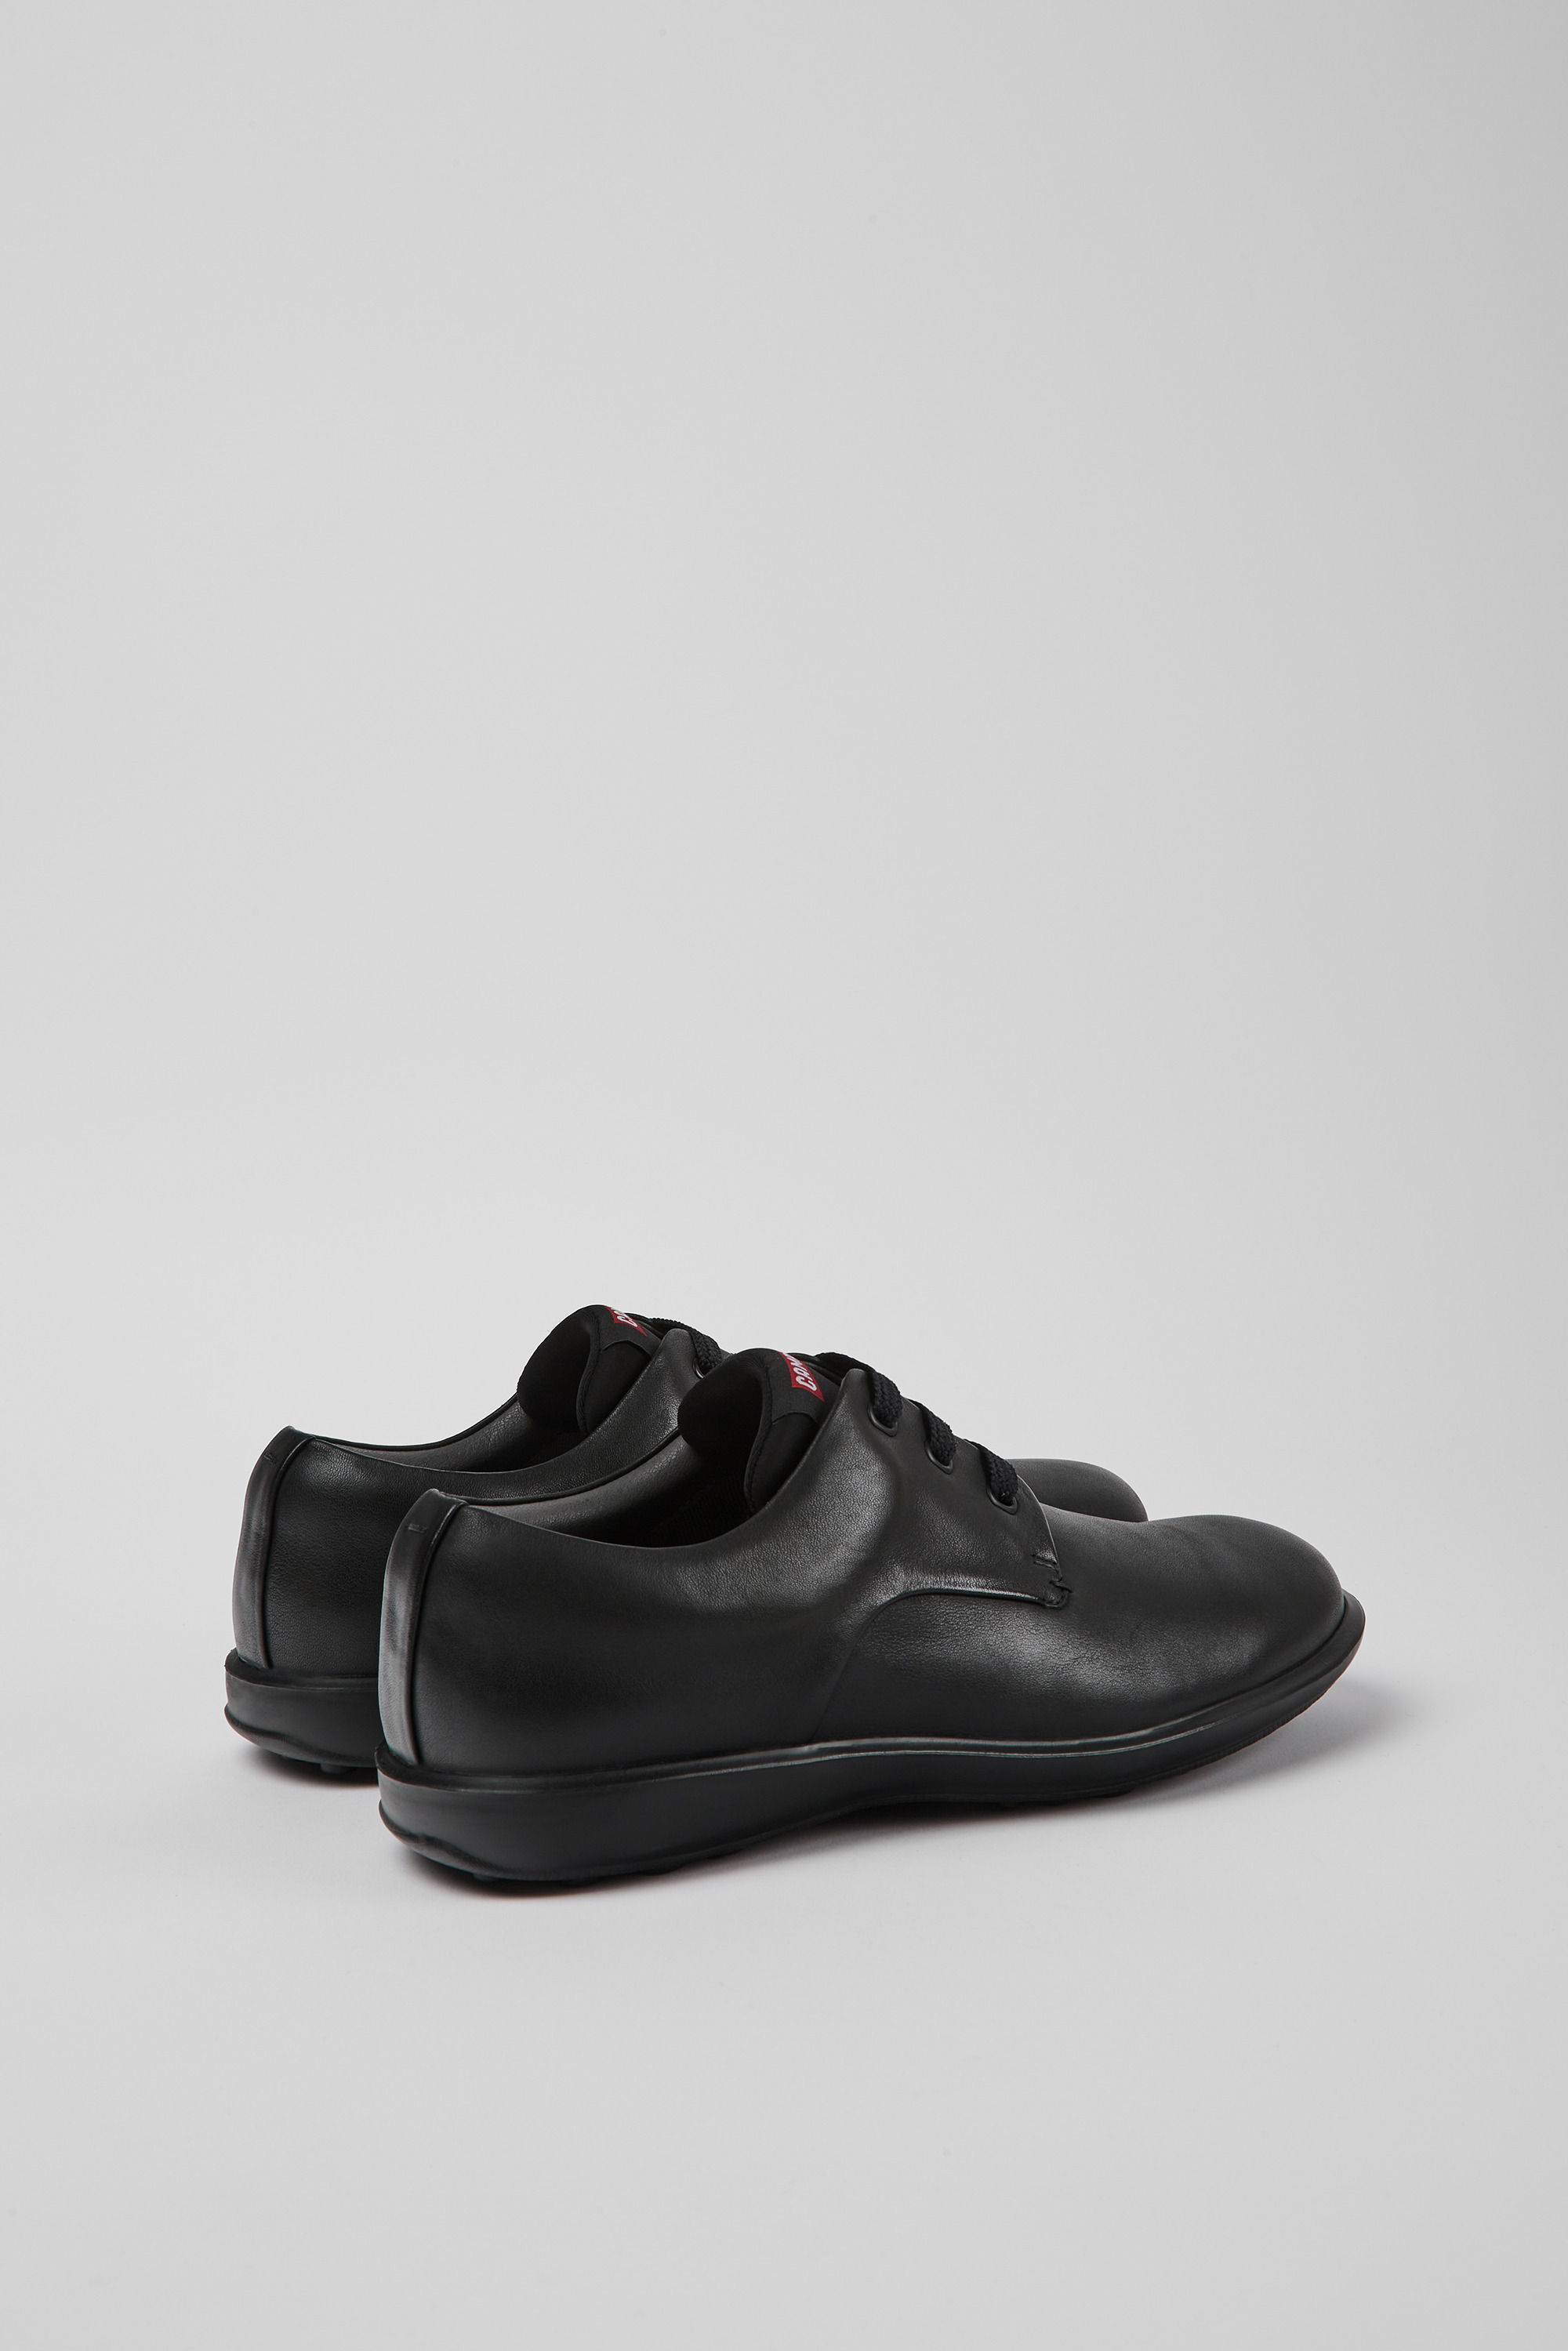 CAMPER: Zapatos de cordones para hombre, Marrón  Zapatos De Cordones Camper  18637-036 ATOM WORK en línea en